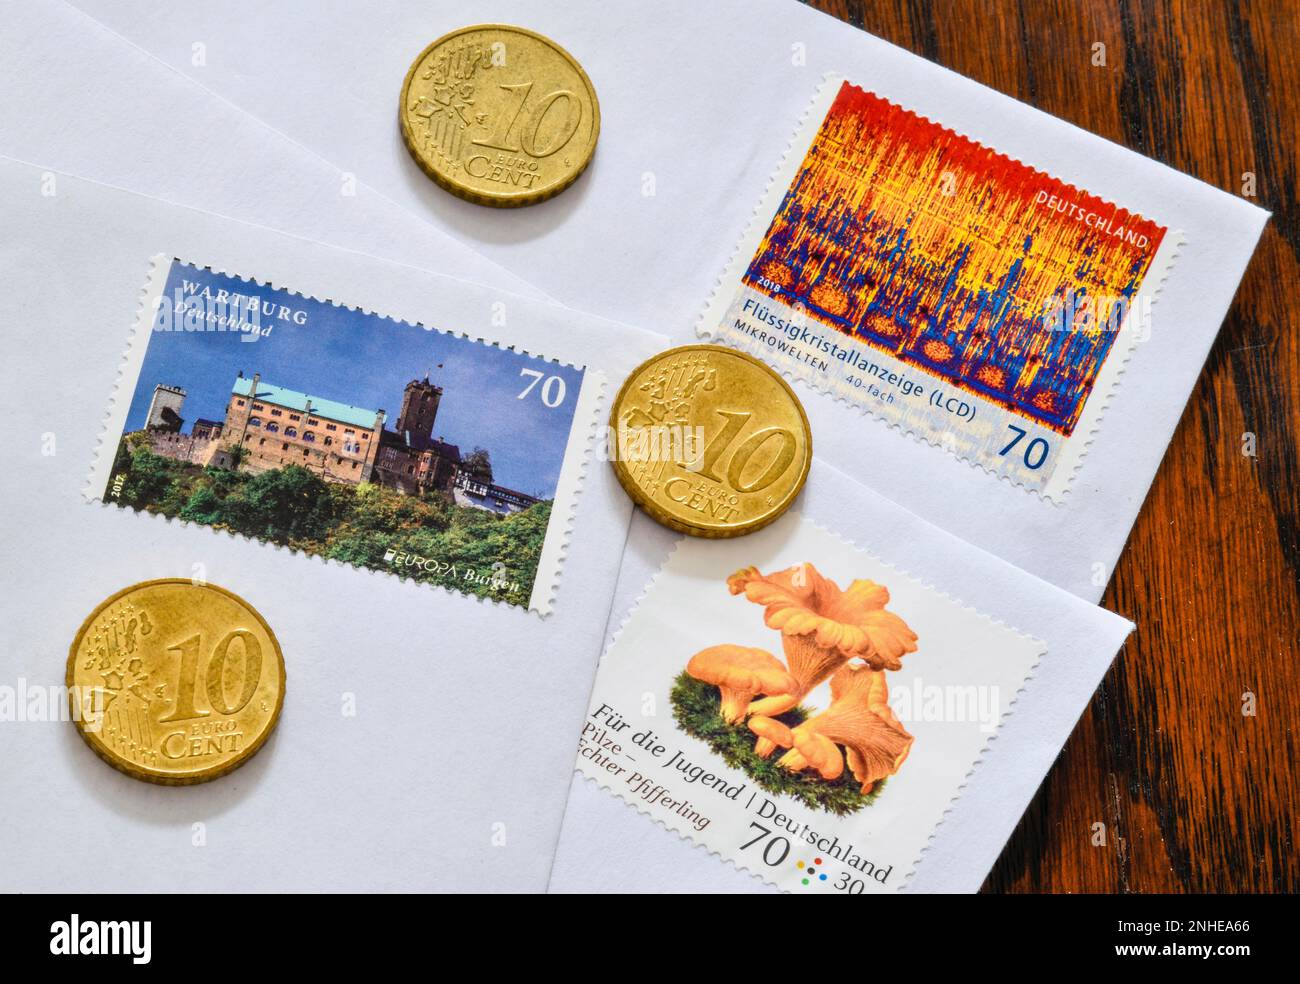 Timbres allemands pièces de 70 cents et 10 cents Banque D'Images